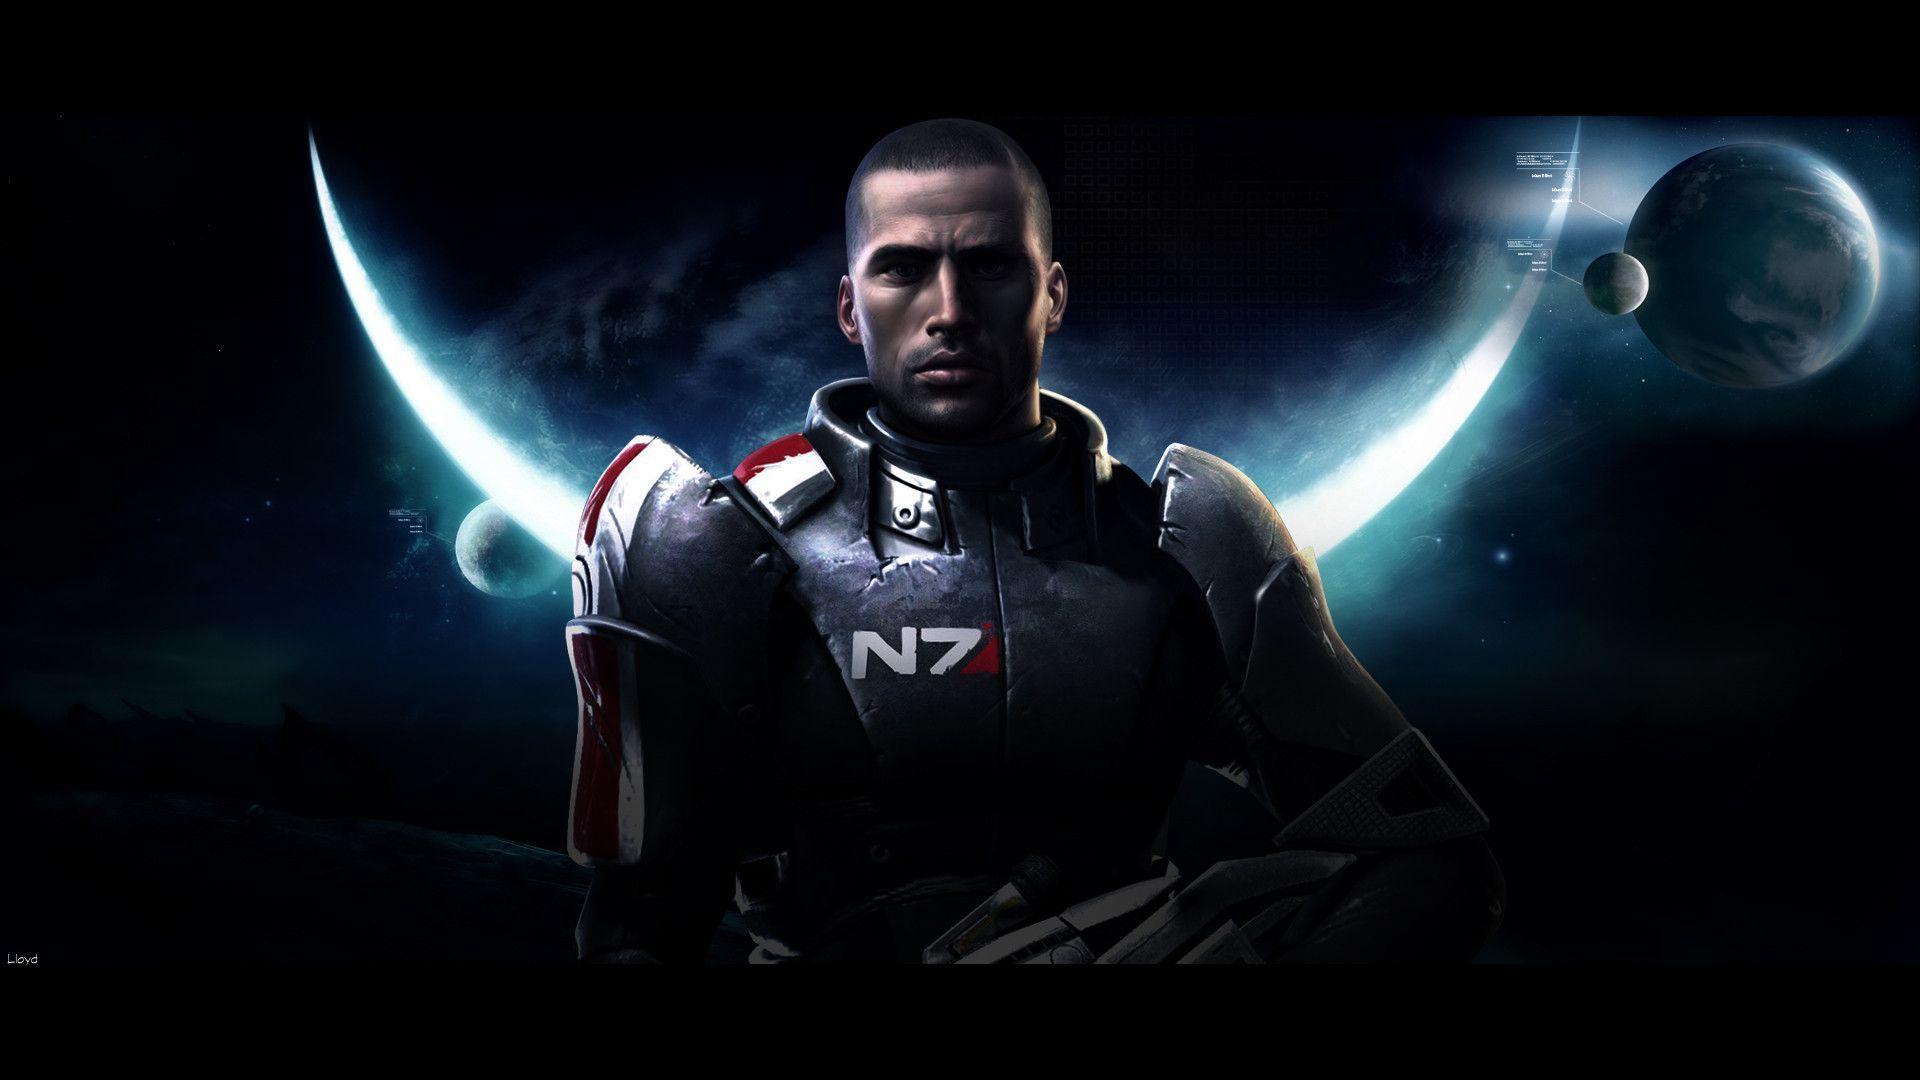 Mass Effect 2 Wallpaper